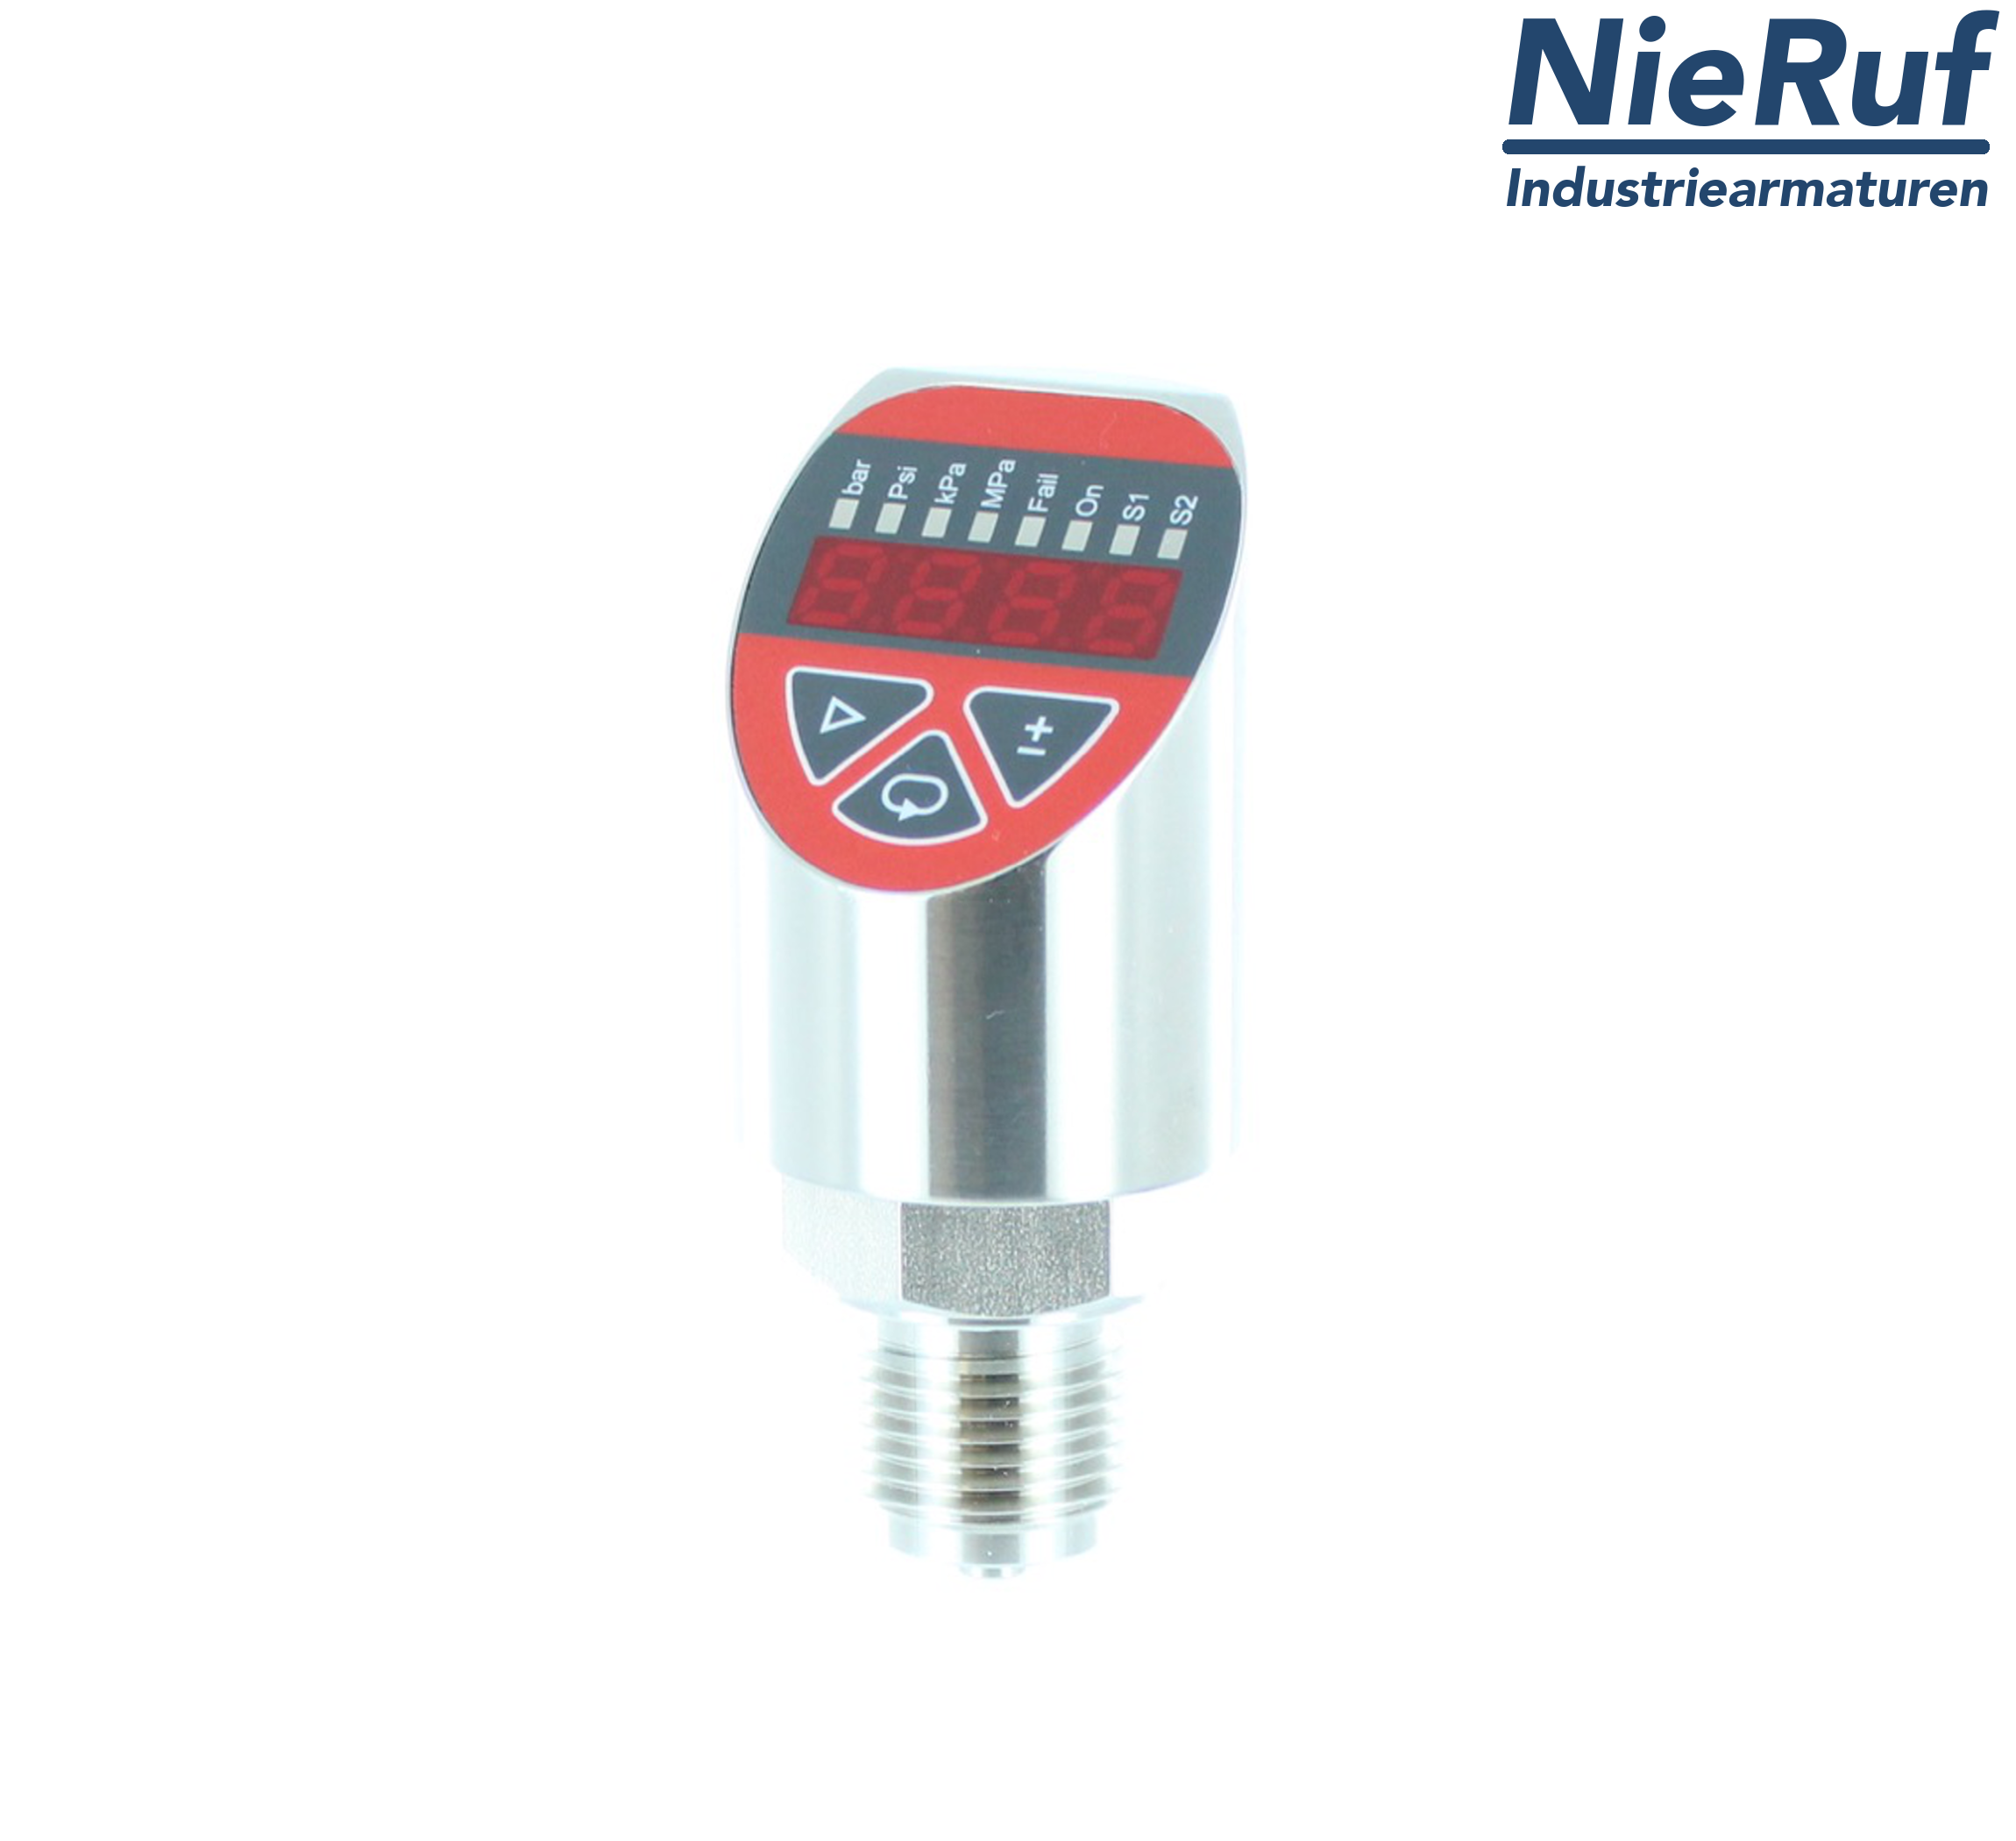 digital pressure sensor G 1/4" B 4-wire: 1xPNP, 1x4 - 20mA FPM 0,0 - 600,0 bar